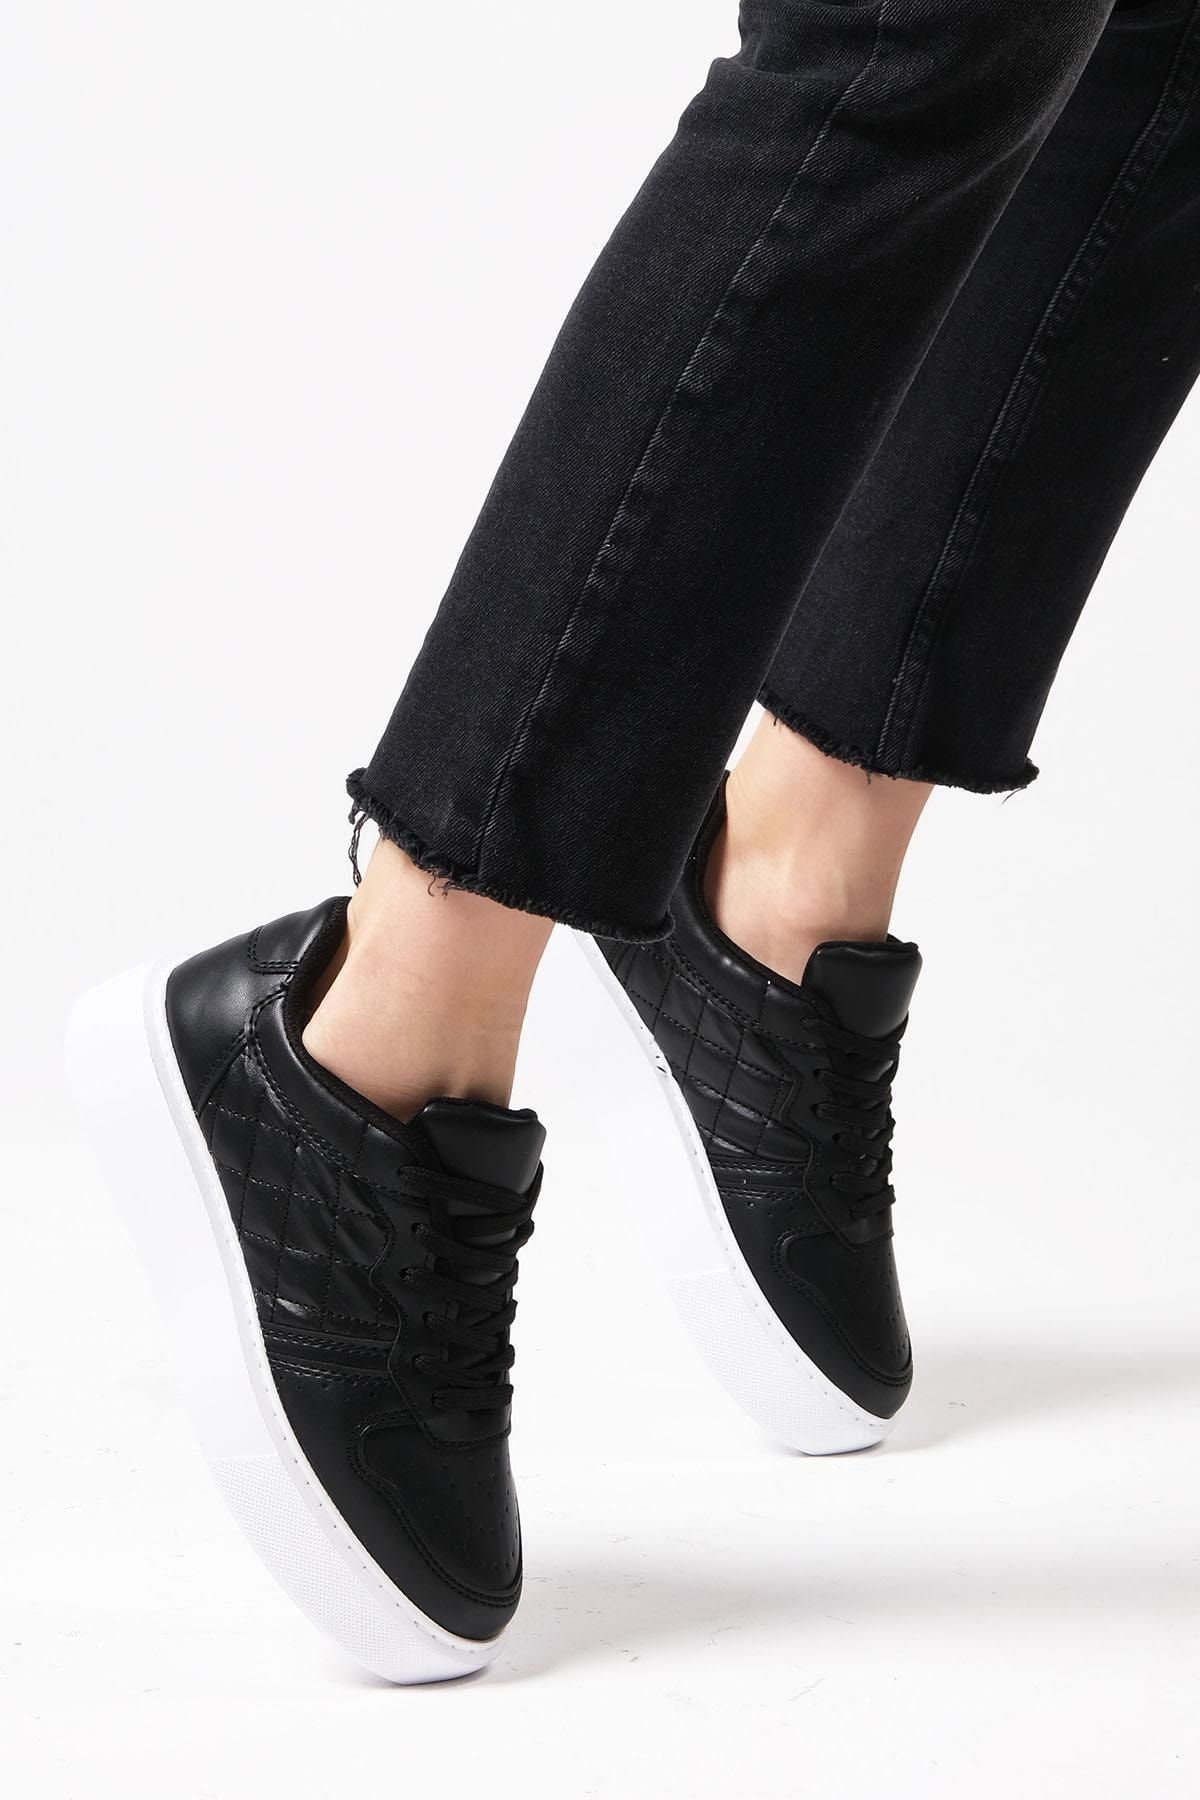 Mio Gusto Theresa Siyah Renk Kadın Günlük Spor Ayakkabı Sneaker